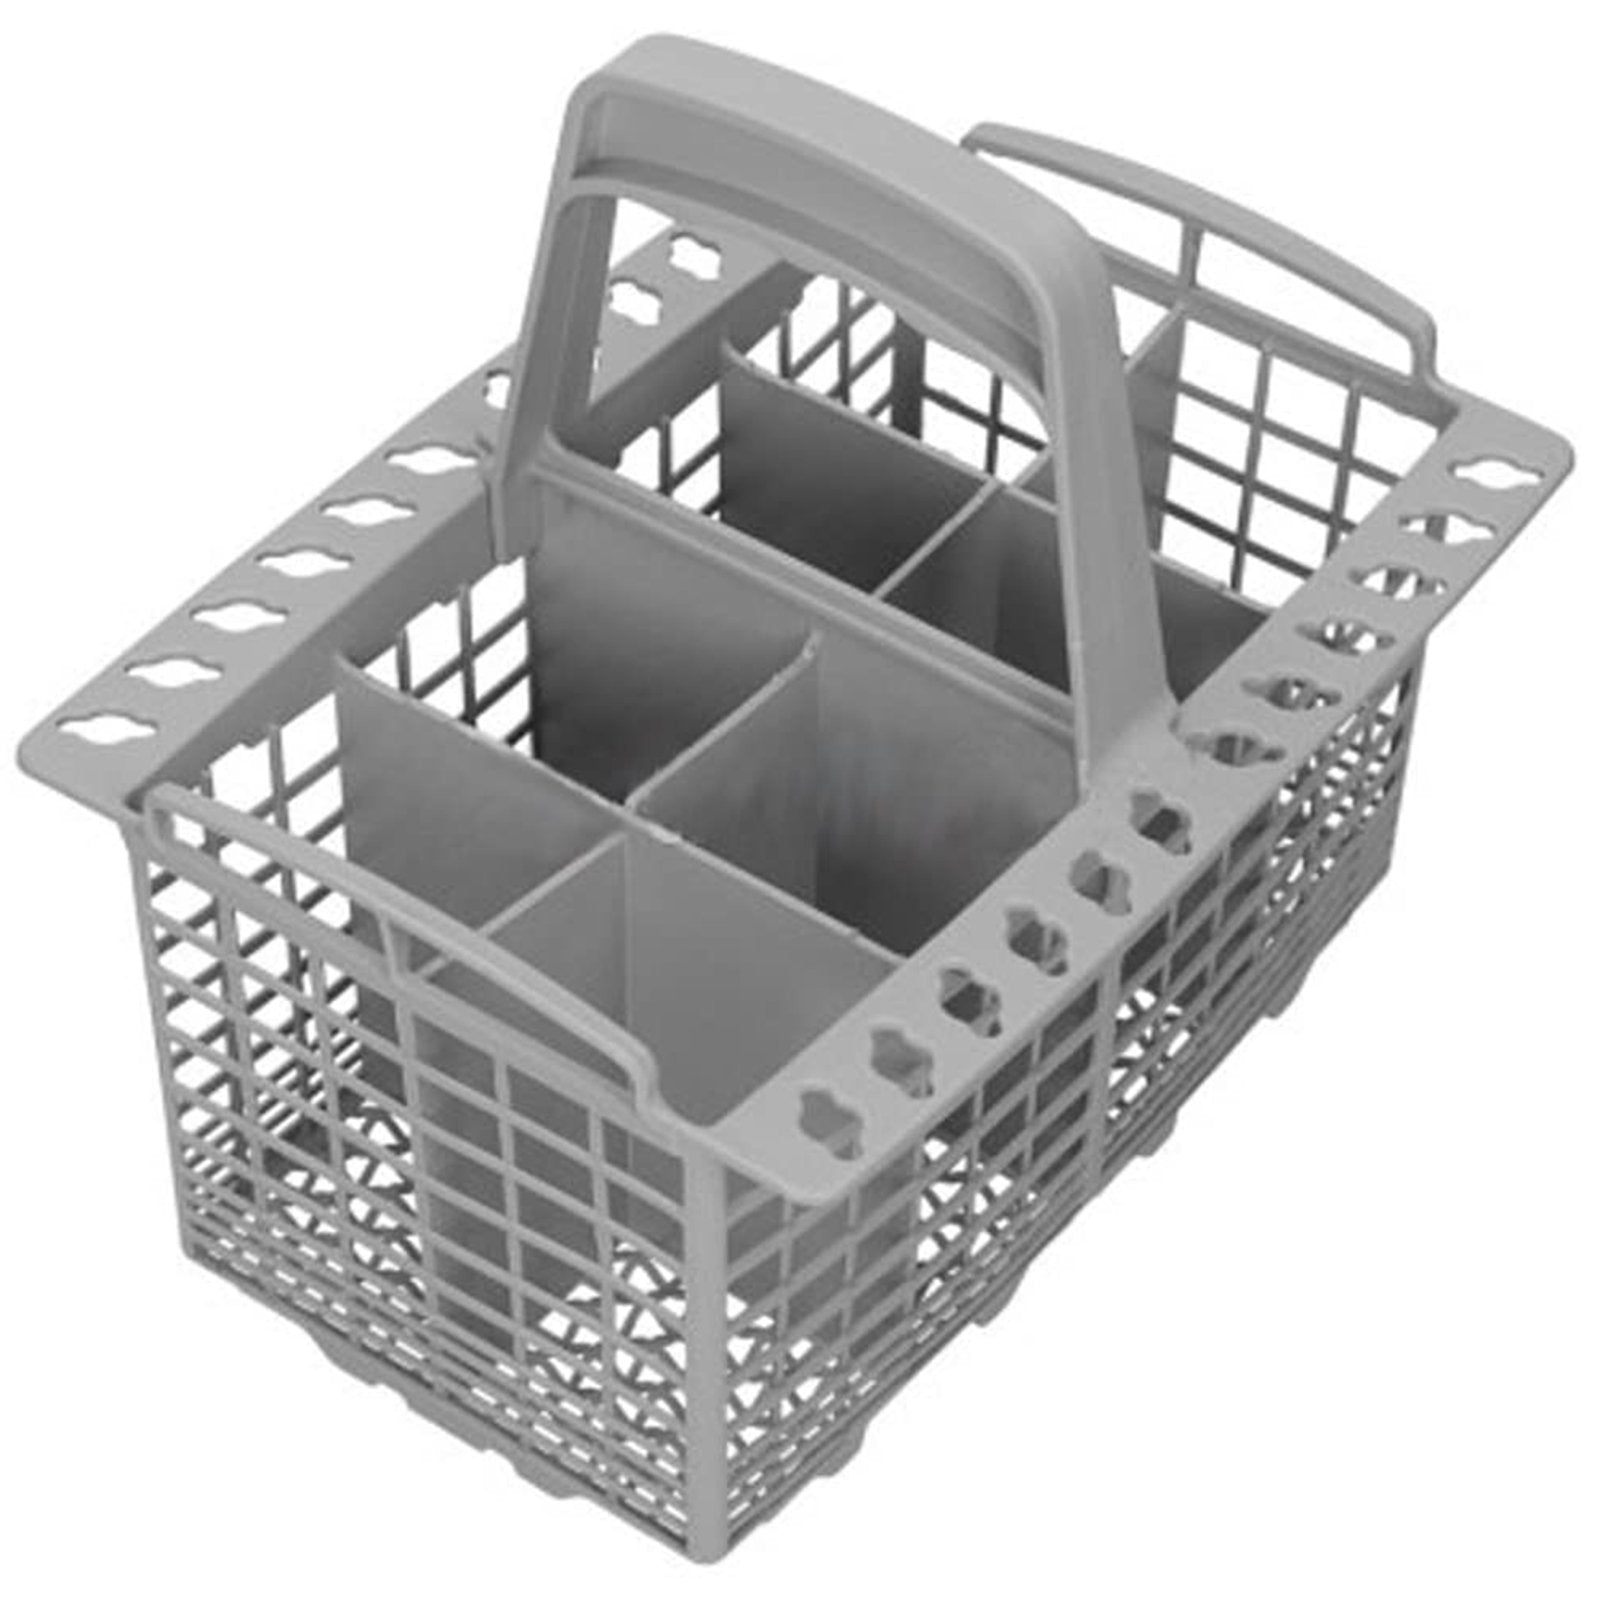 INDESIT Dishwasher Cutlery Basket Universal